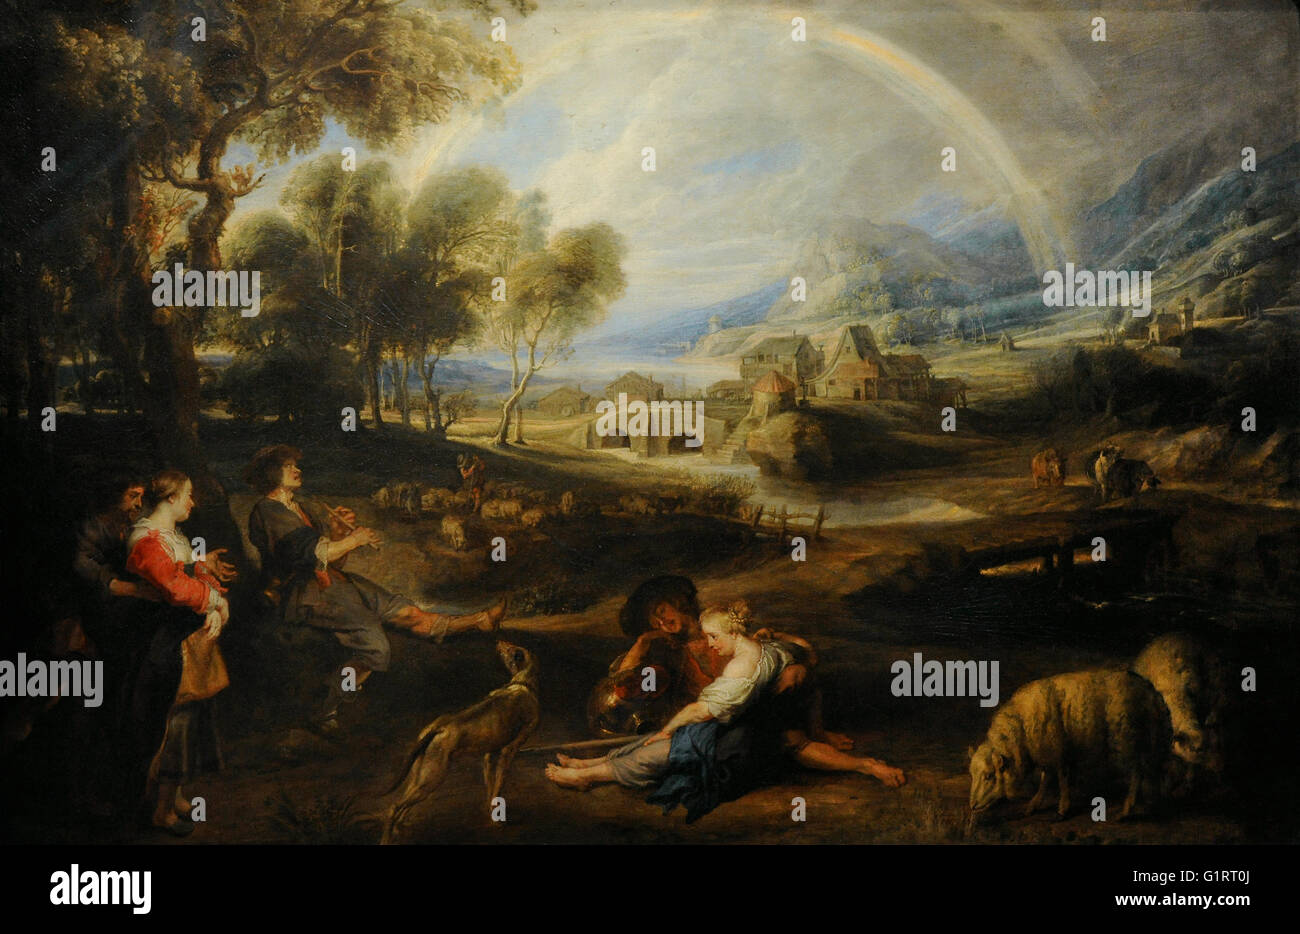 Peter Paul Rubens (1577-1640). Peintre baroque flamand. Paysage avec un arc-en-ciel, 1632-1635. Huile sur toile. Le Musée de l'Ermitage. Saint Petersburg. La Russie. Banque D'Images